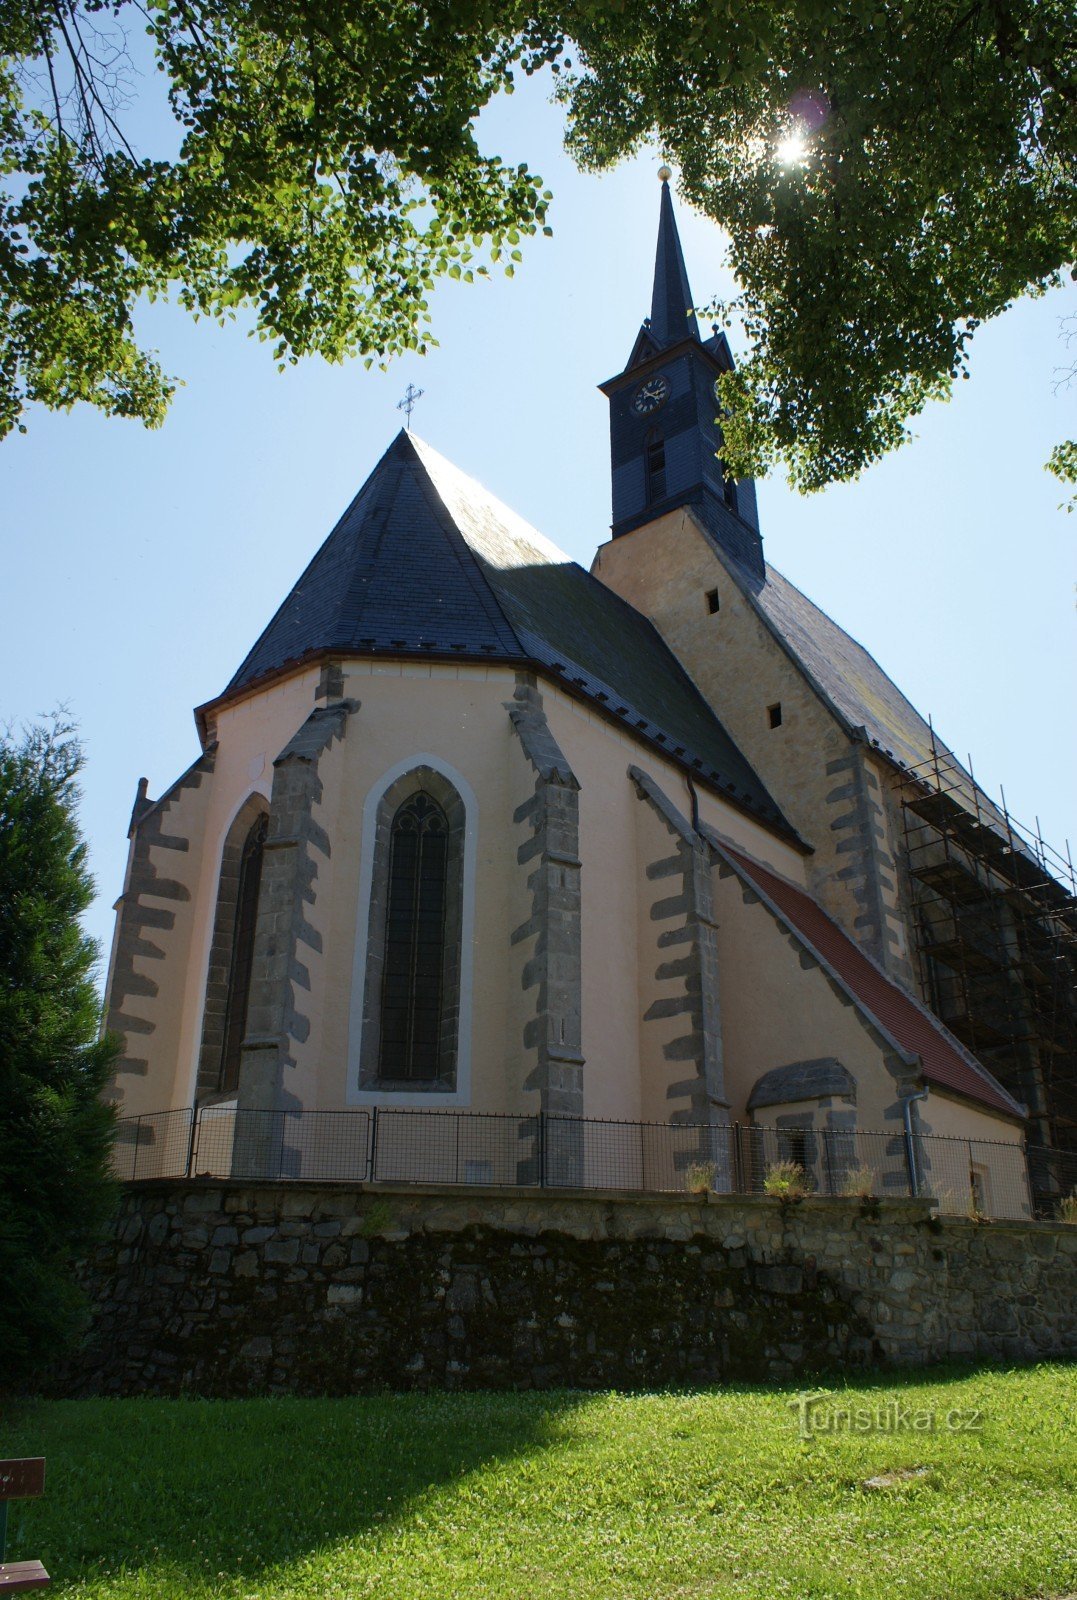 Dolní Dvořiště – Chiesa di S. Giglio